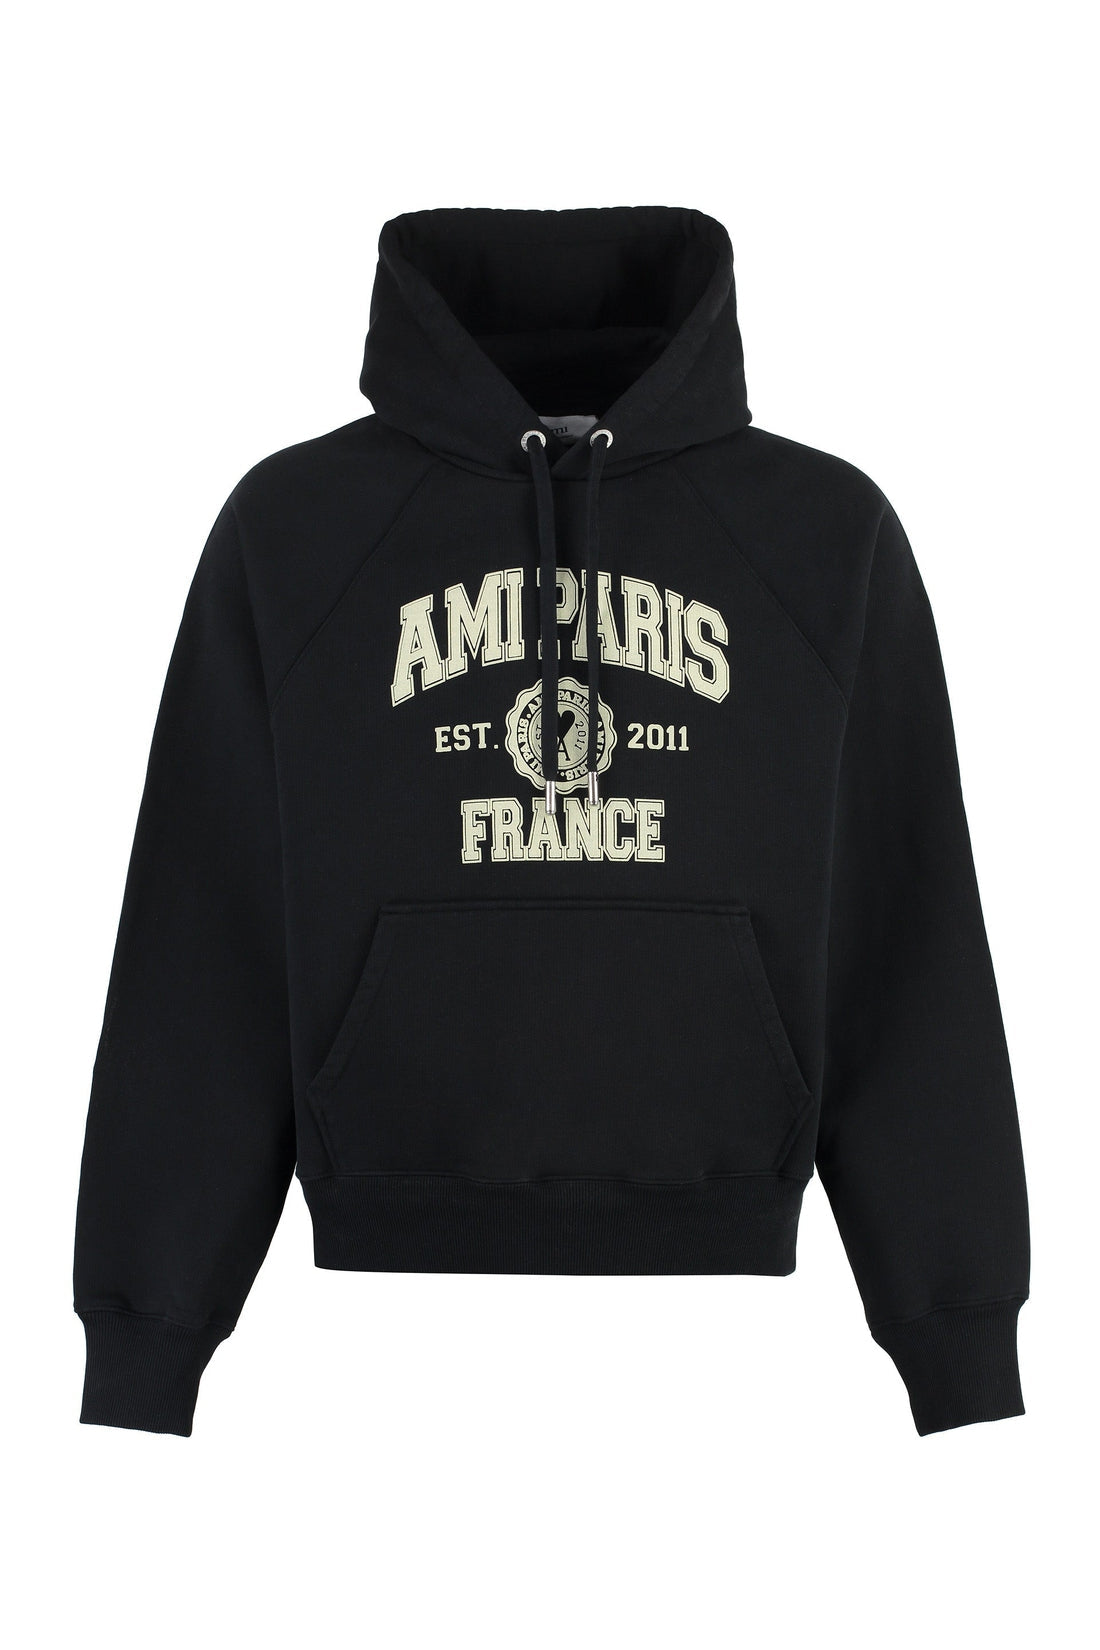 AMI PARIS-OUTLET-SALE-Cotton hoodie-ARCHIVIST